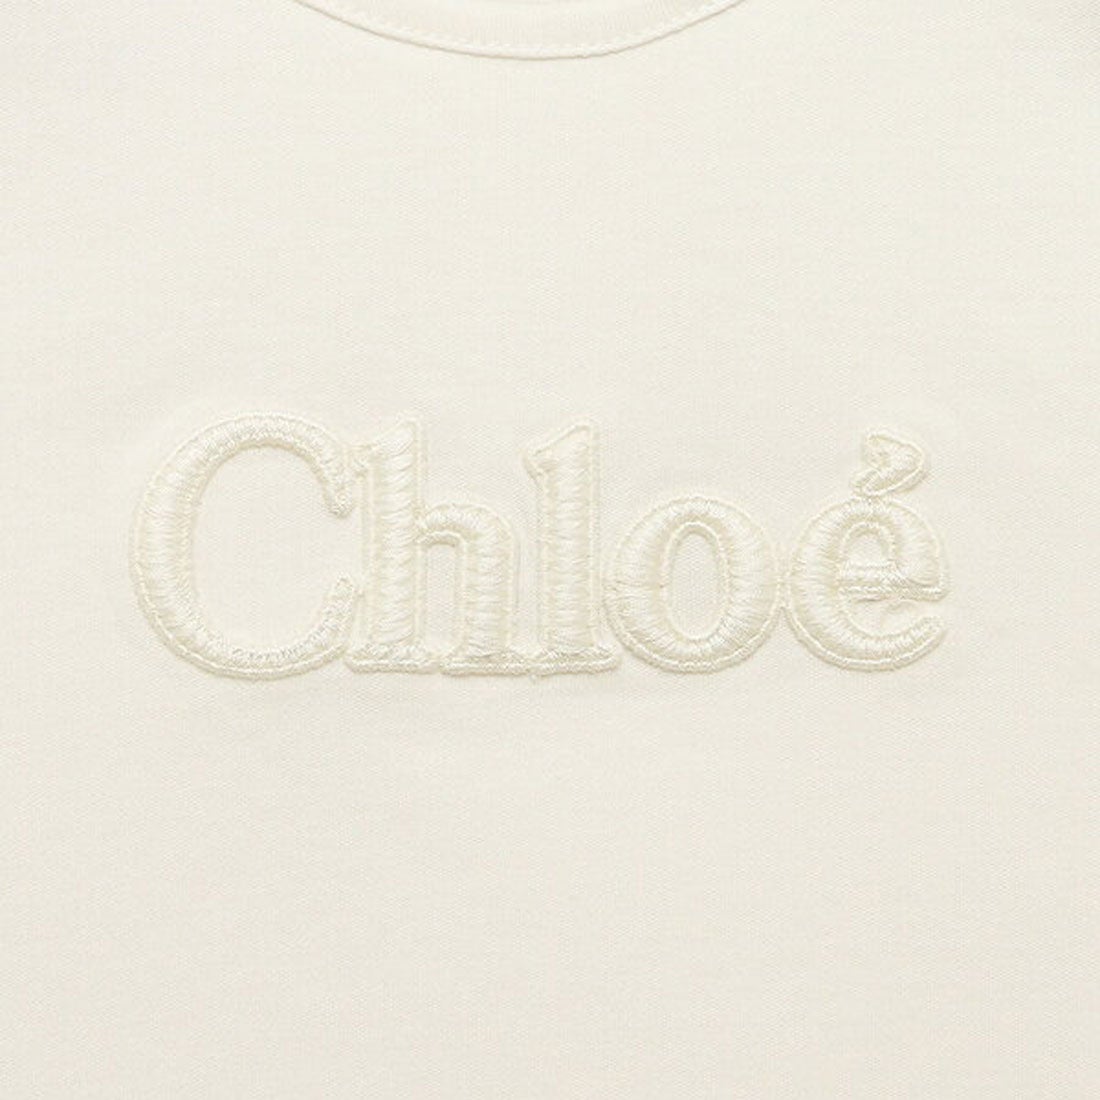 クロエ Chloe Tシャツ・カットソー ベビー ホワイト ガールズ CHLOE